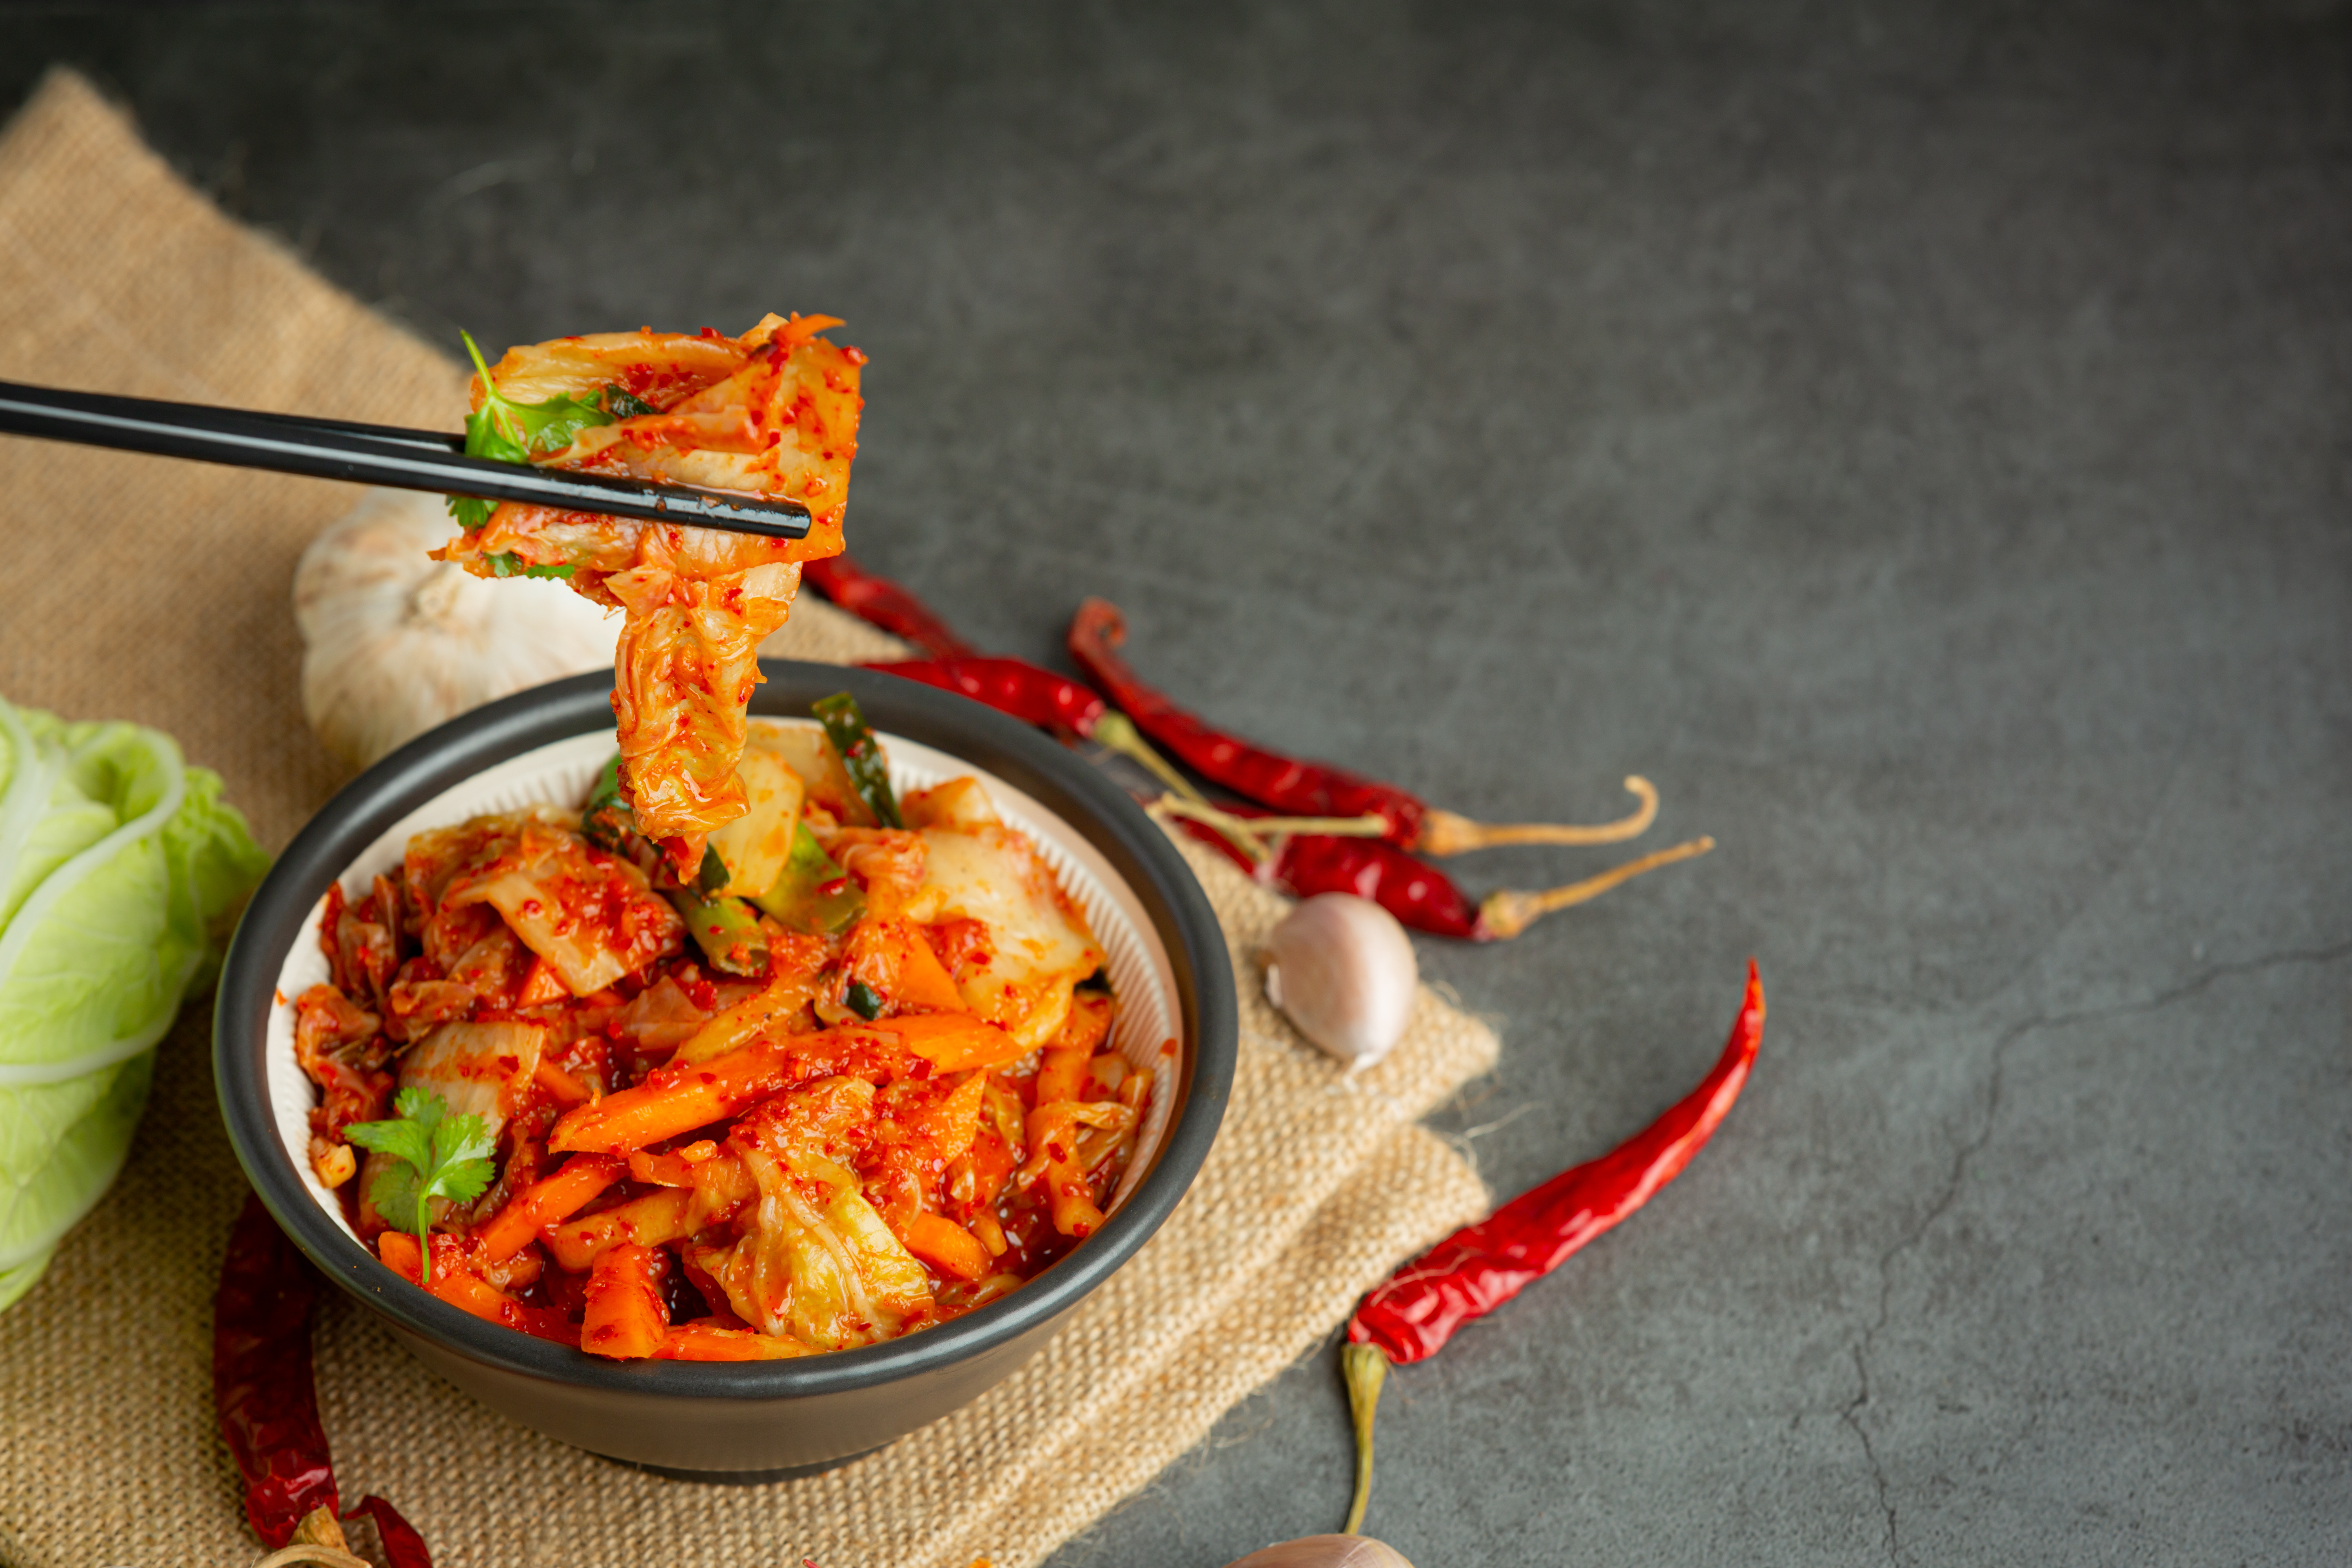 Resep Kimchi Mudah dan Praktis ala Drama Korea 